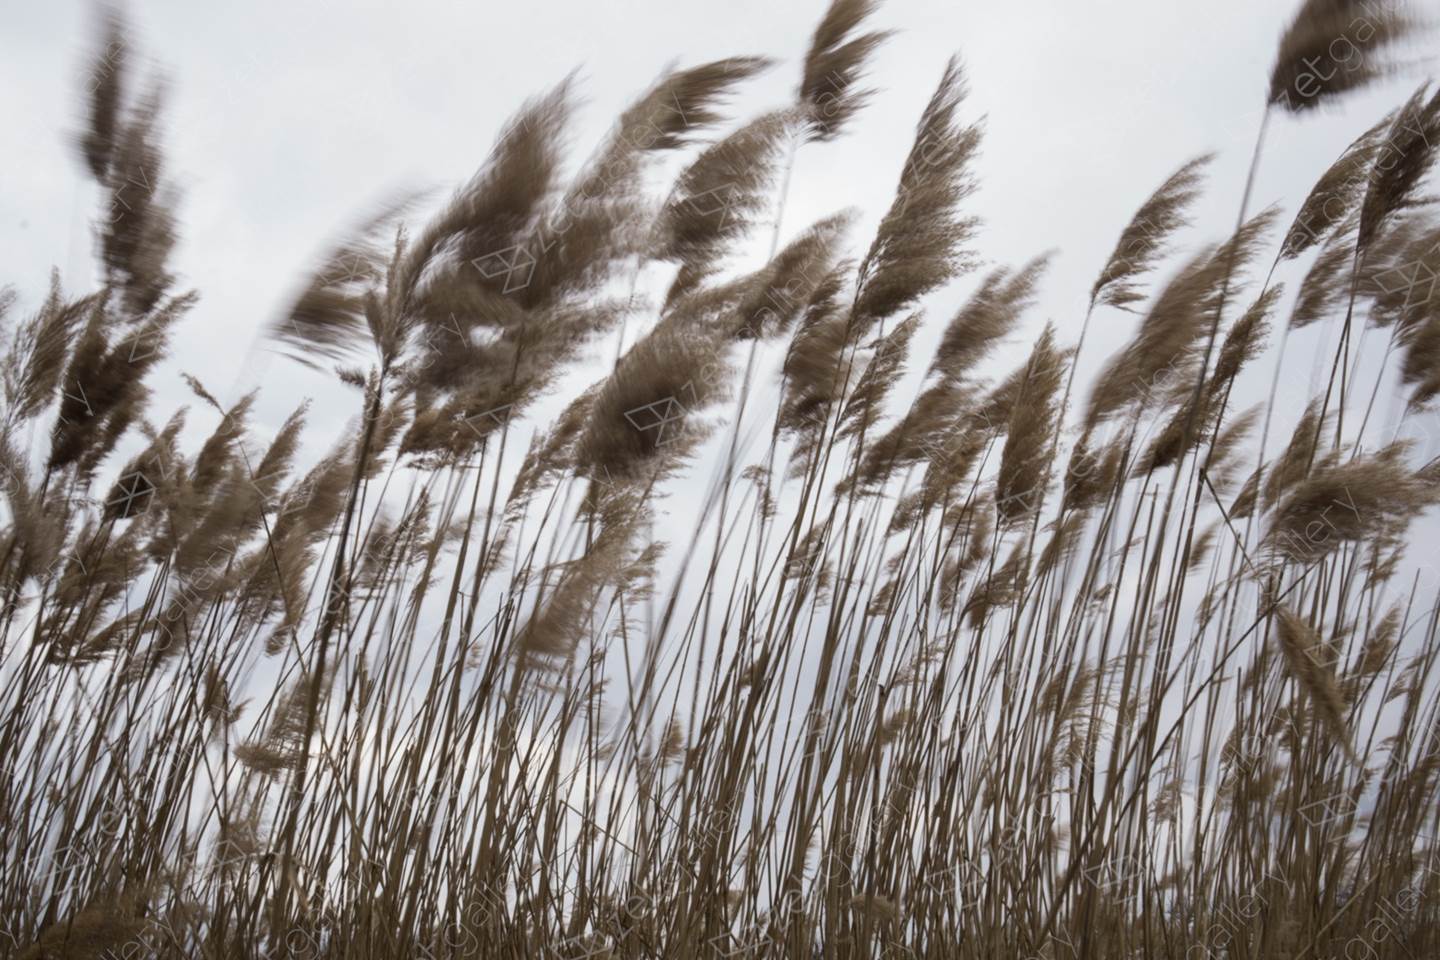 Landscape with reeds #3, original Nature morte Numérique La photographie par Liliia Kucher